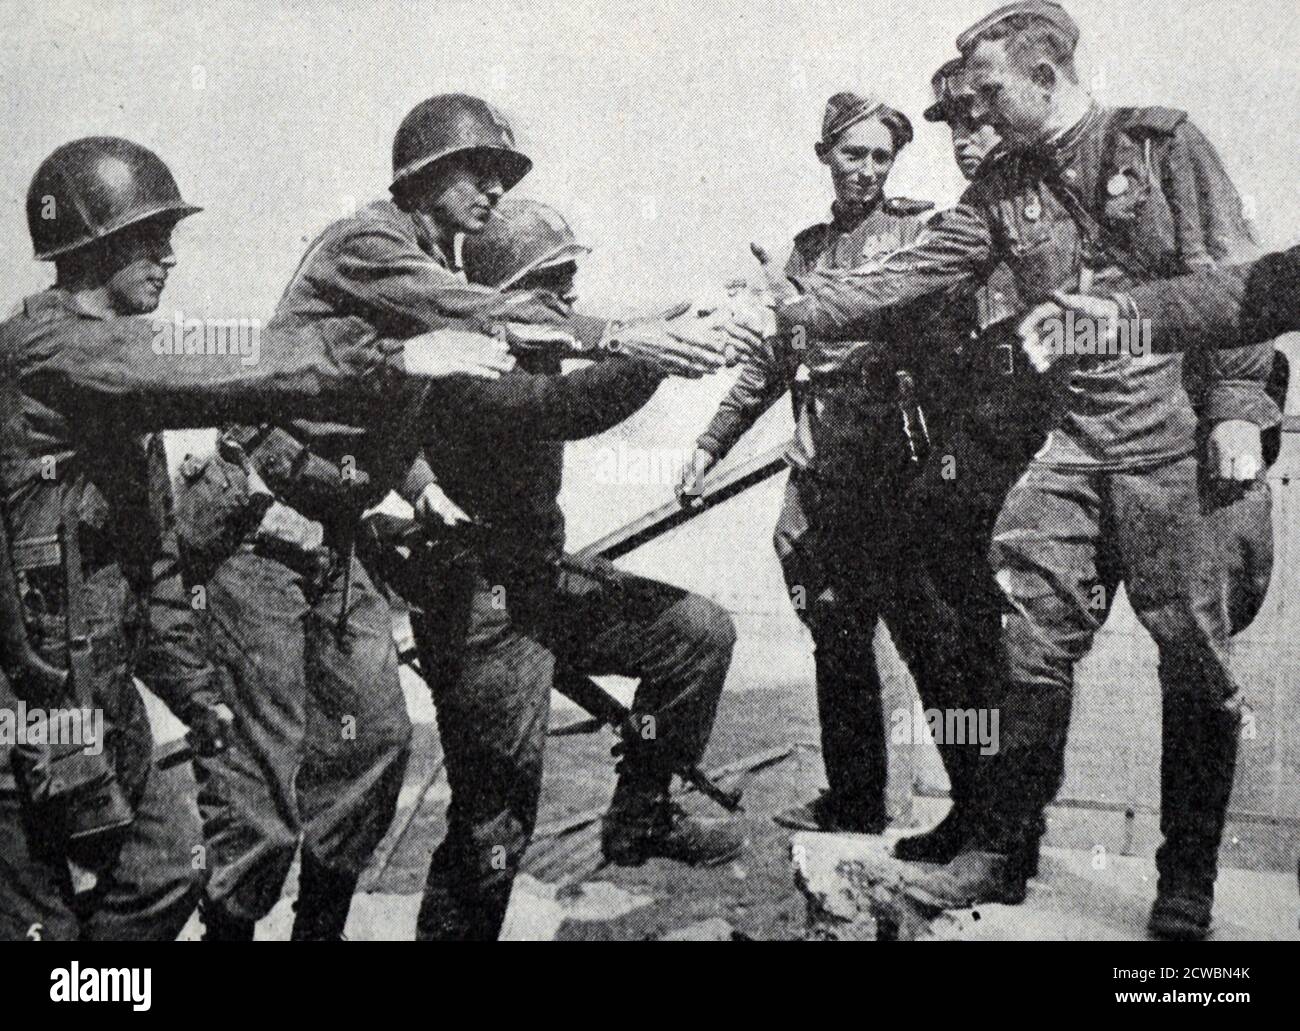 Schwarz-Weiß-Fotografie des Zweiten Weltkriegs (1939-1945) zeigt das Ende des Krieges in Europa; amerikanische und russische Truppen schütteln sich die Hände, nachdem sie sich auf der Elbe bei Torgau treffen, als Symbol für die Teilung der deutschen Streitkräfte durch die Alliierten am 26. April 1945. Stockfoto